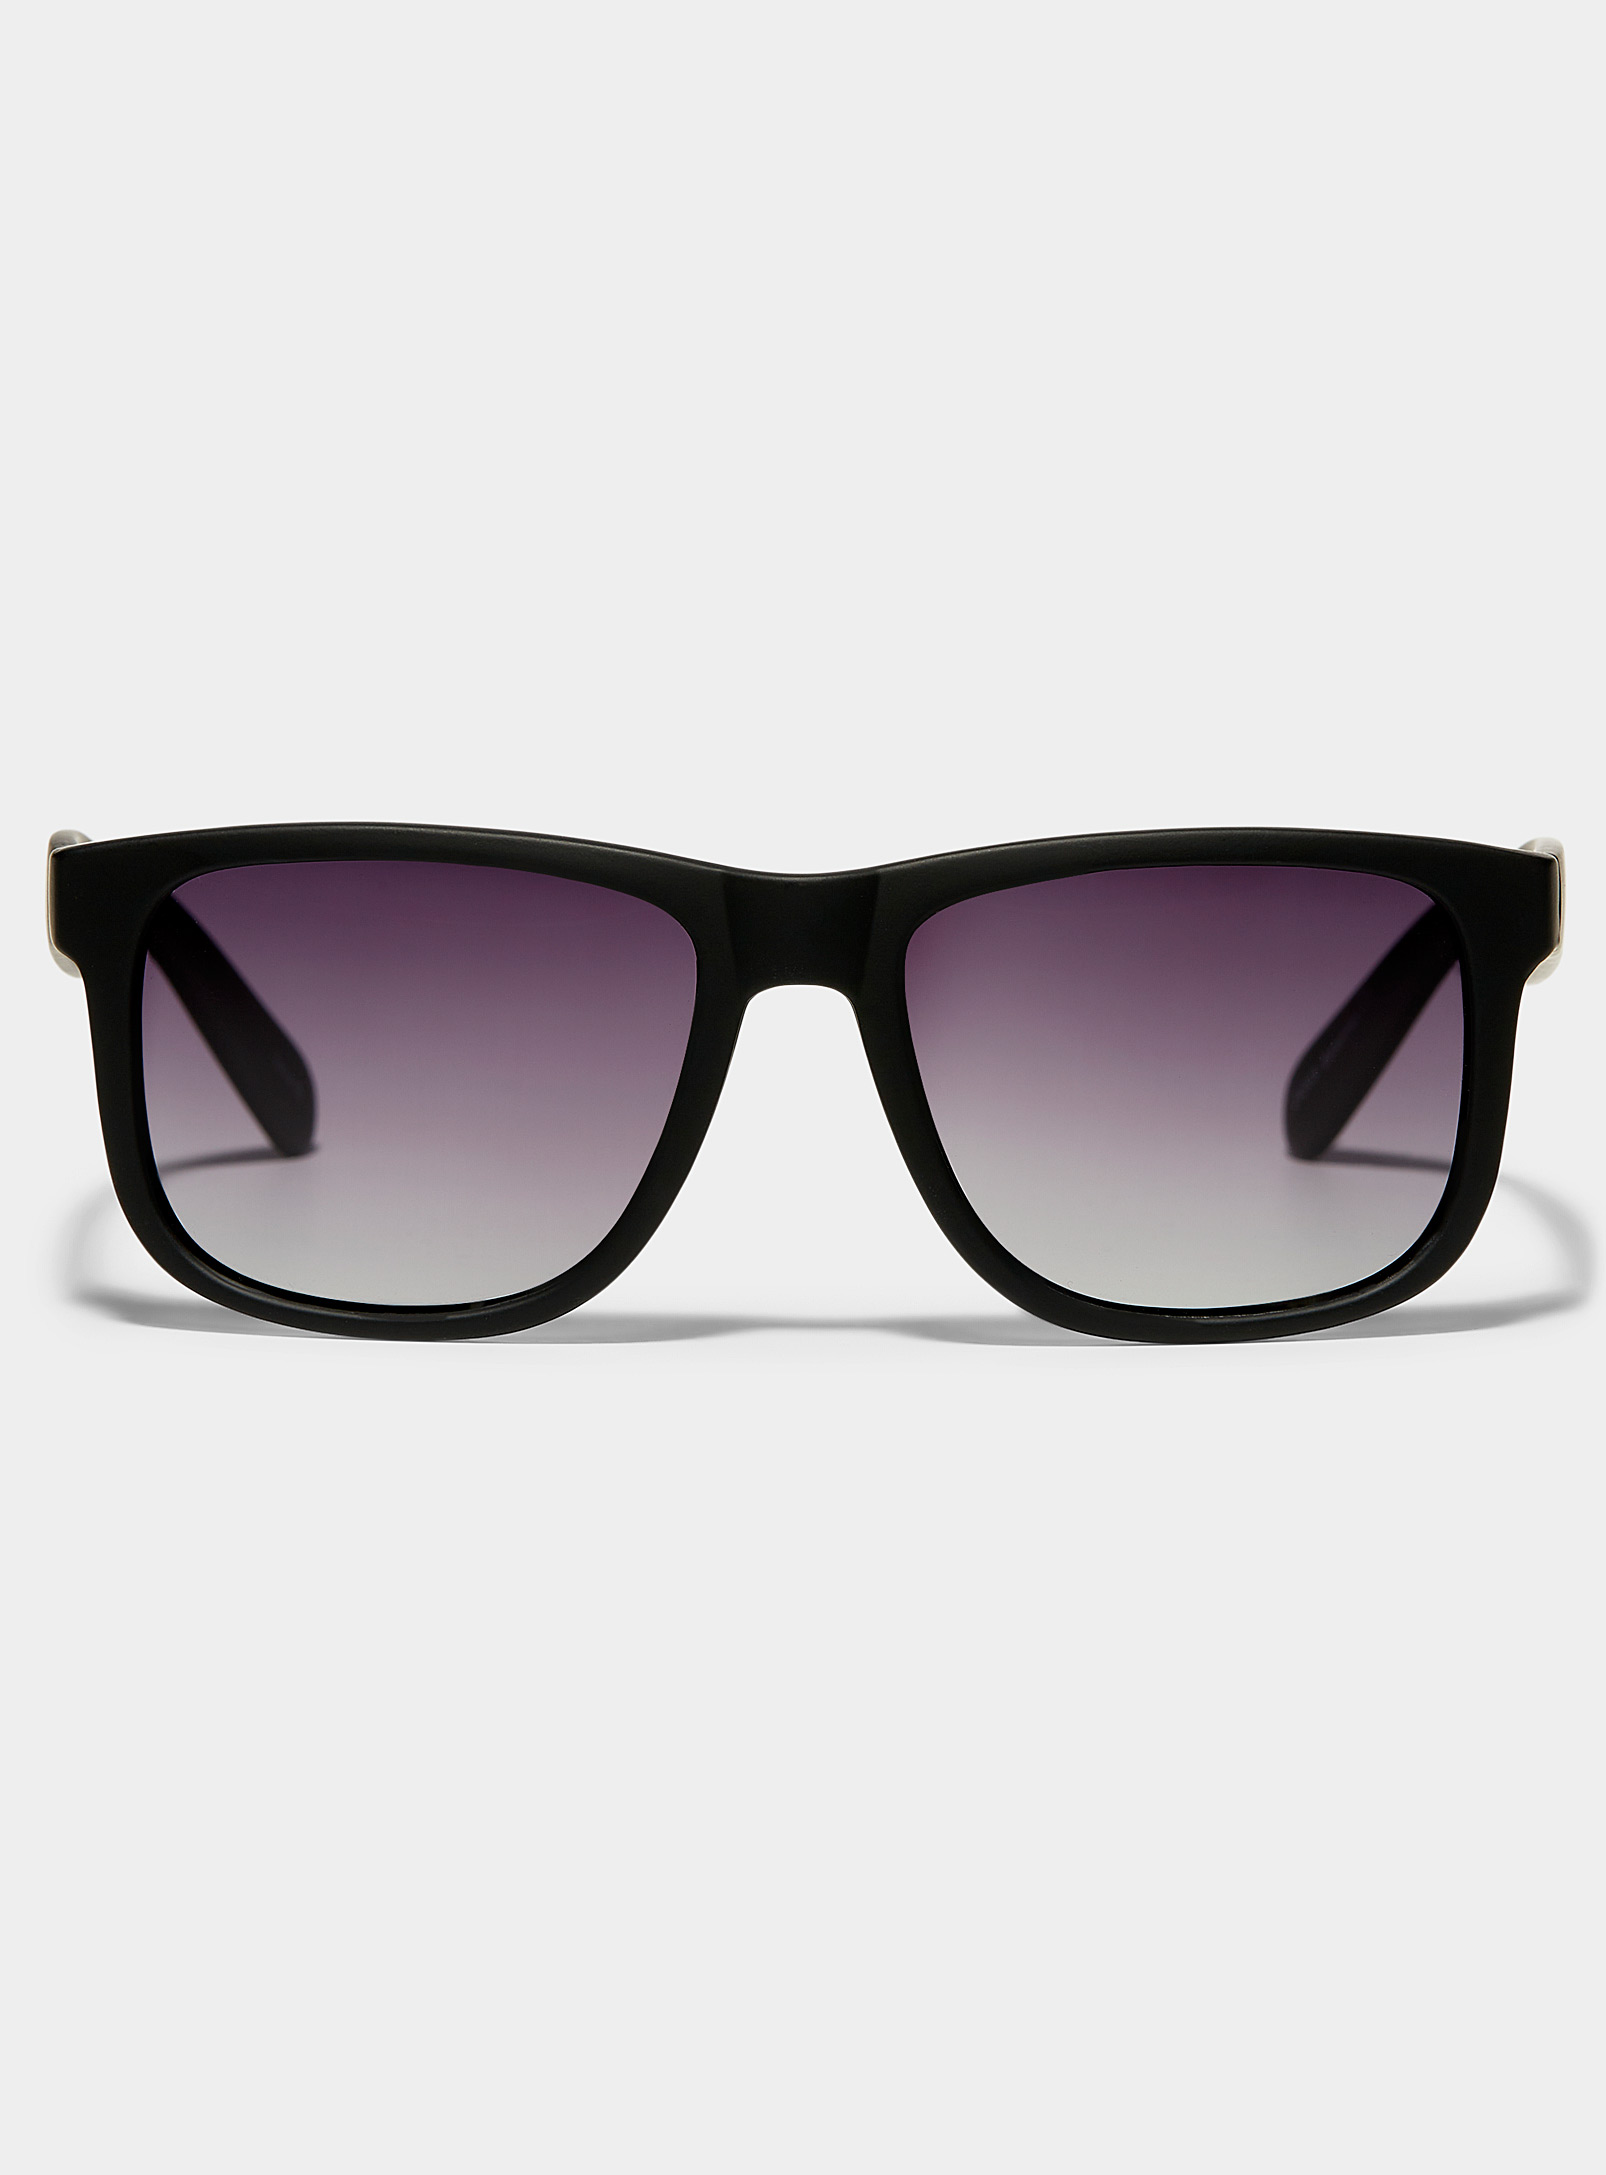 Le 31 Bateman Square Sunglasses In Black